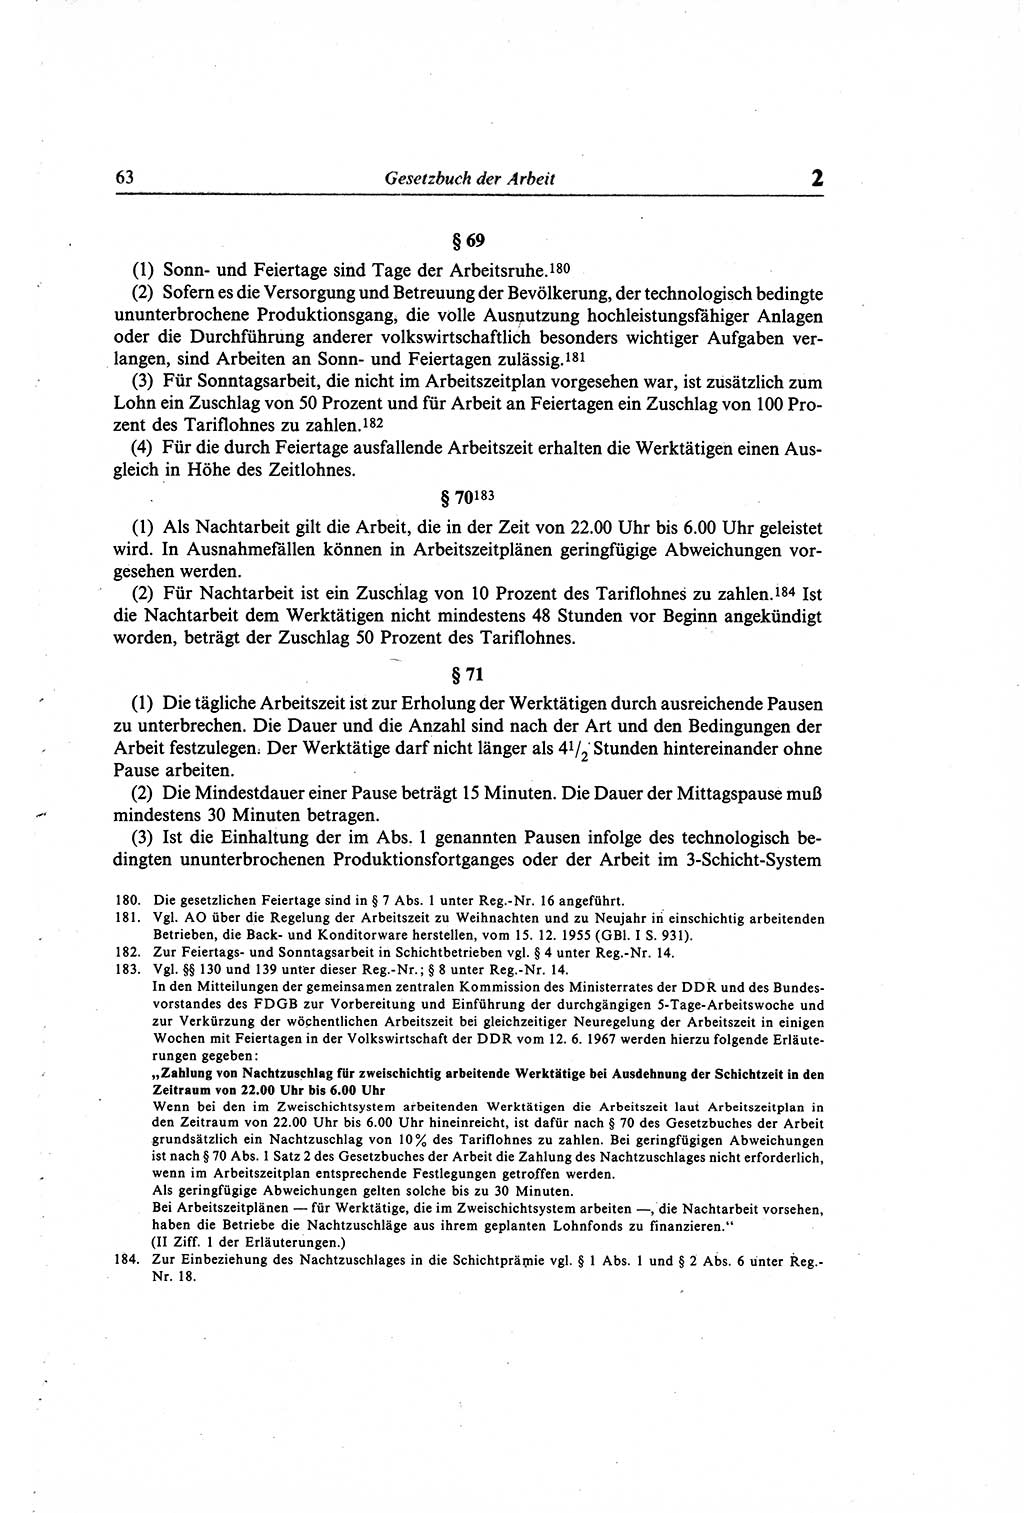 Gesetzbuch der Arbeit (GBA) und andere ausgewählte rechtliche Bestimmungen [Deutsche Demokratische Republik (DDR)] 1968, Seite 63 (GBA DDR 1968, S. 63)